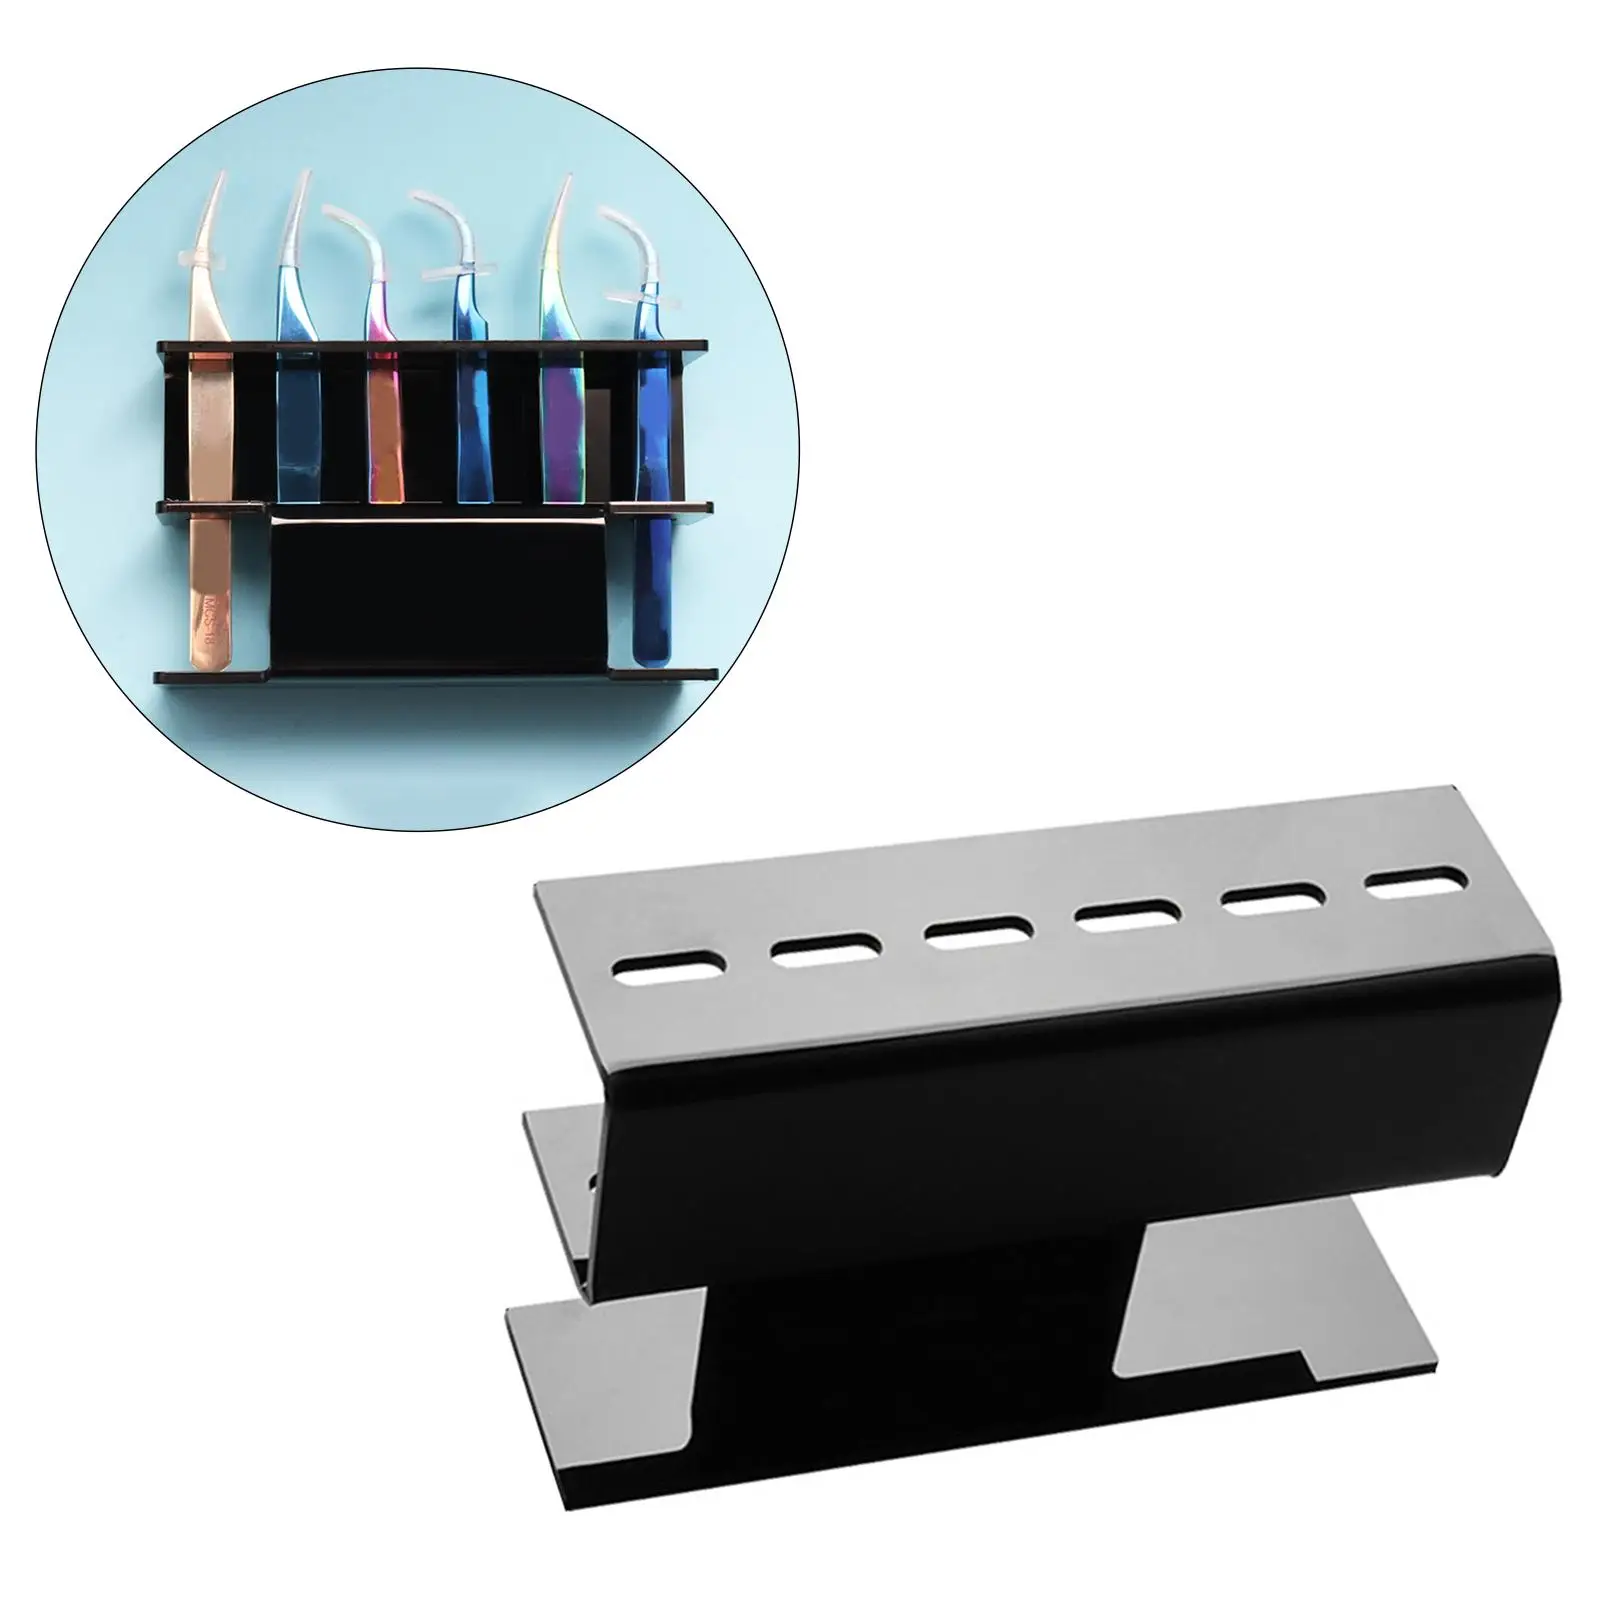 6 Hole  Tweezers Display Stand Acrylic Storage Desk Organizer